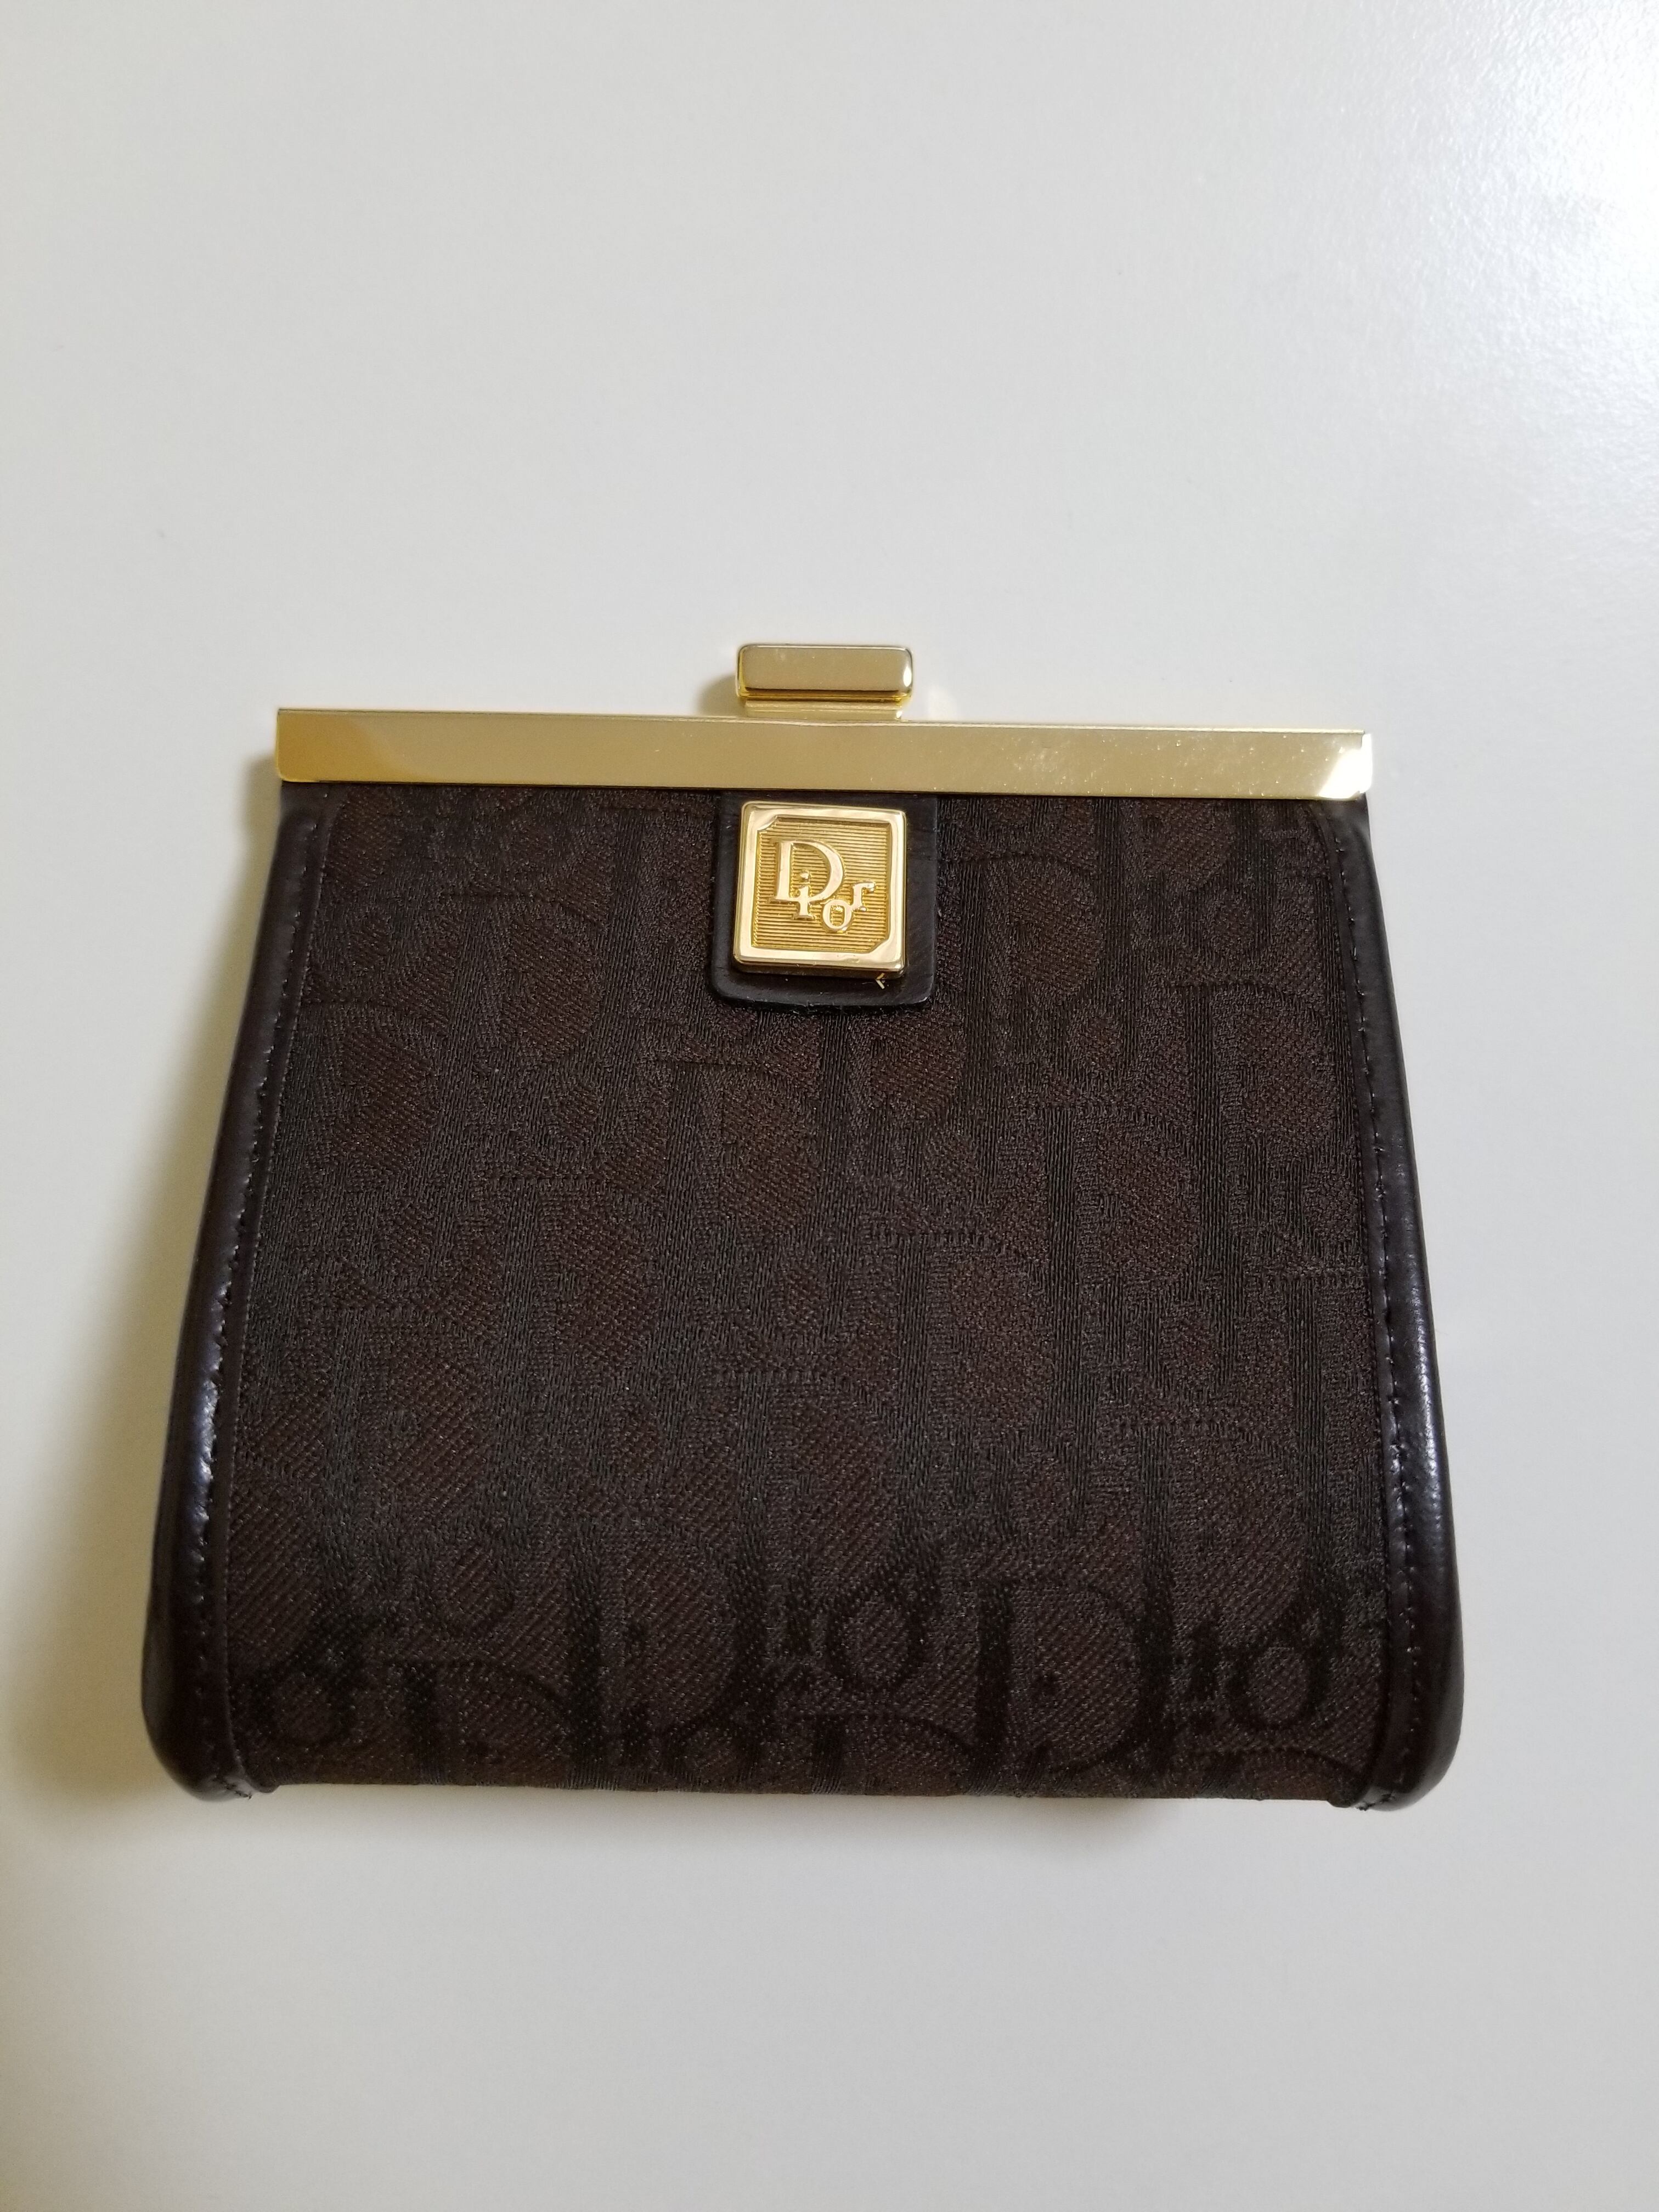 ディオール Christian Dior ビンテージ コインケース 財布